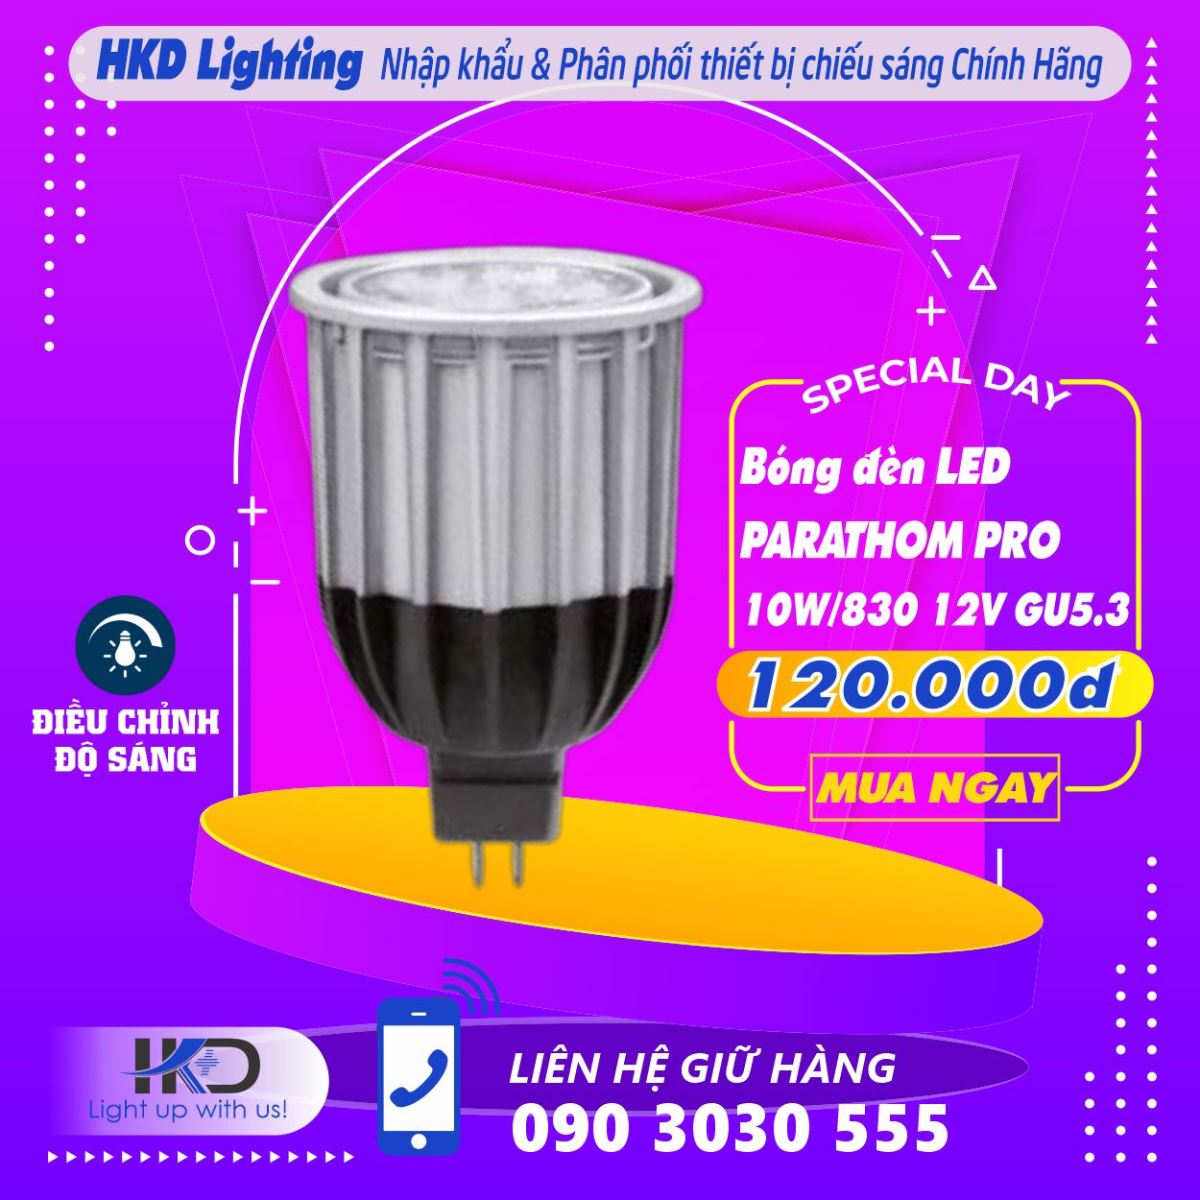 Bóng đèn LED PARATHOM PRO 10W/830 12V GU5.3 OSRAM - Tuổi thọ bền lâu, Ánh sáng chất lượng, Thay thế dễ dàng